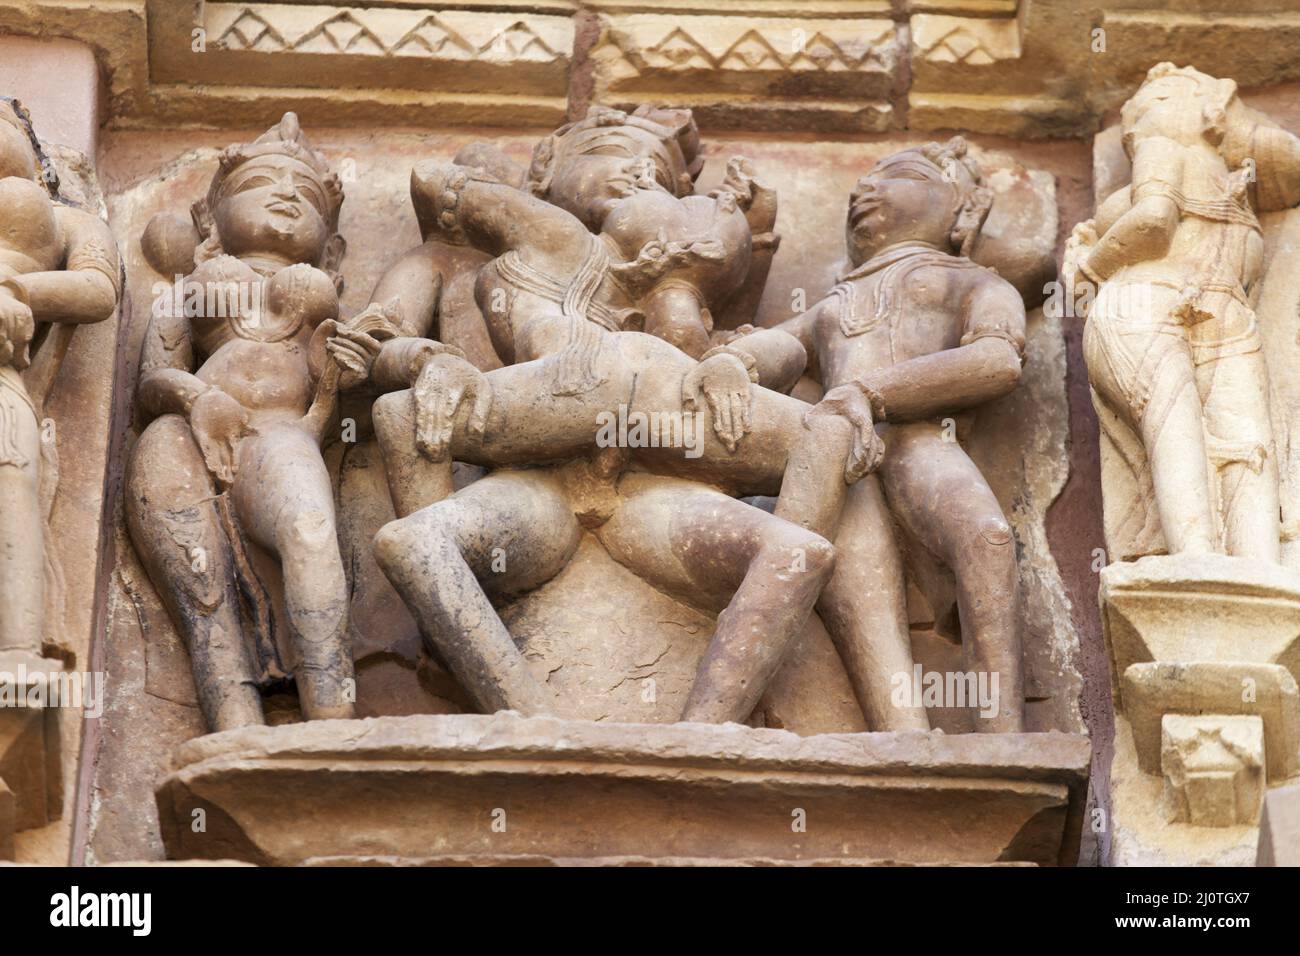 Stone carvings in Khajuraho India Stock Photo